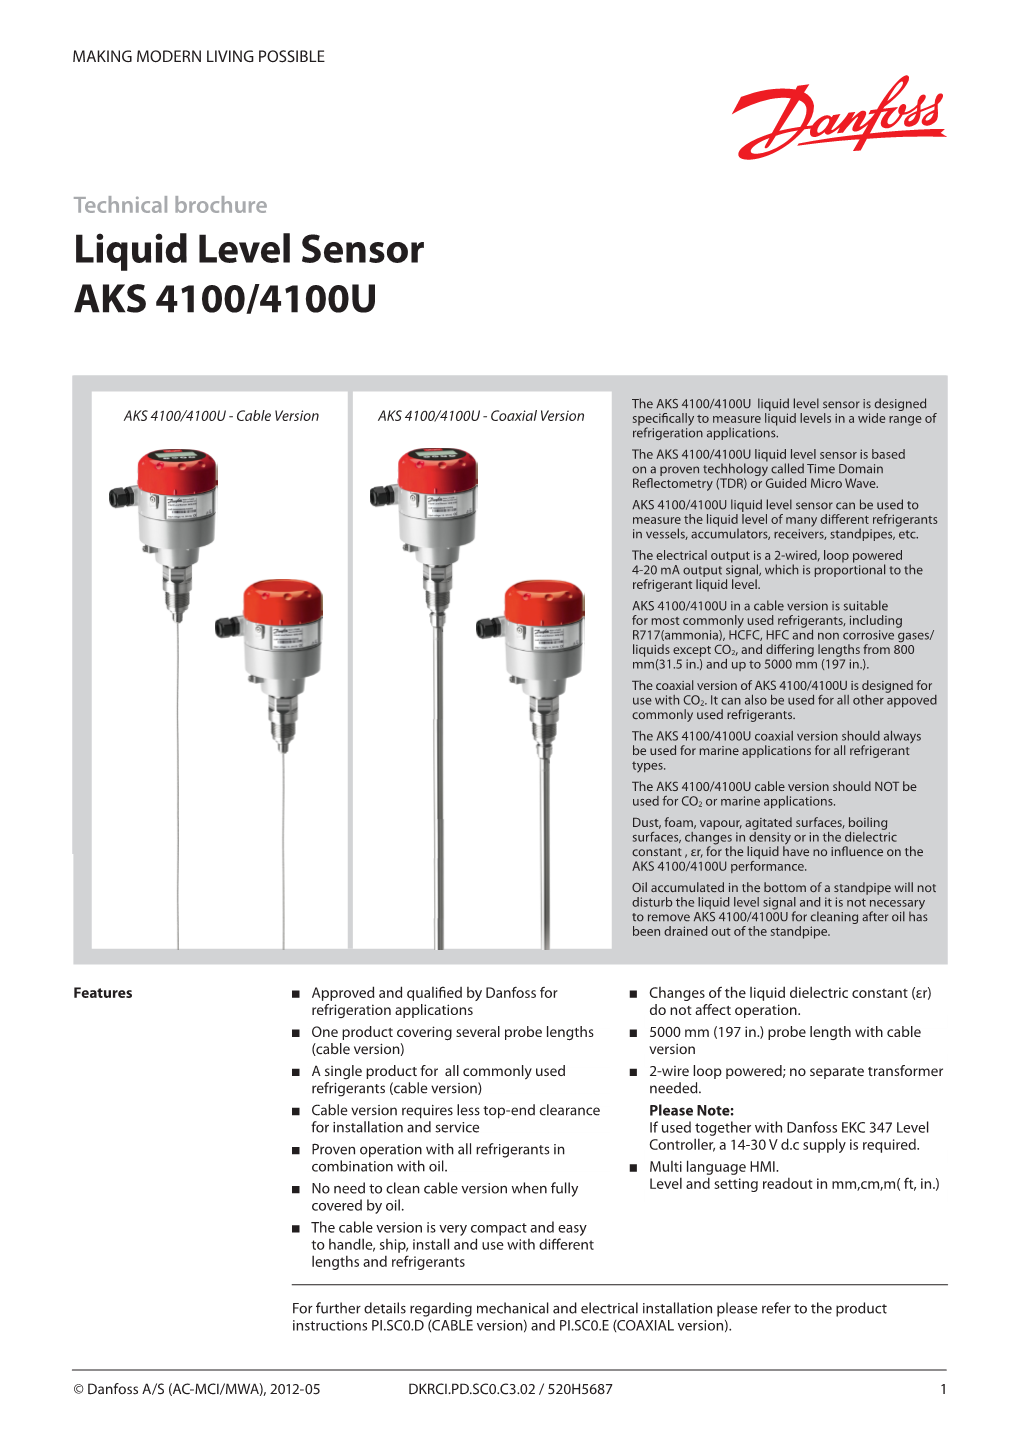 Liquid Level Sensor AKS 4100/4100U